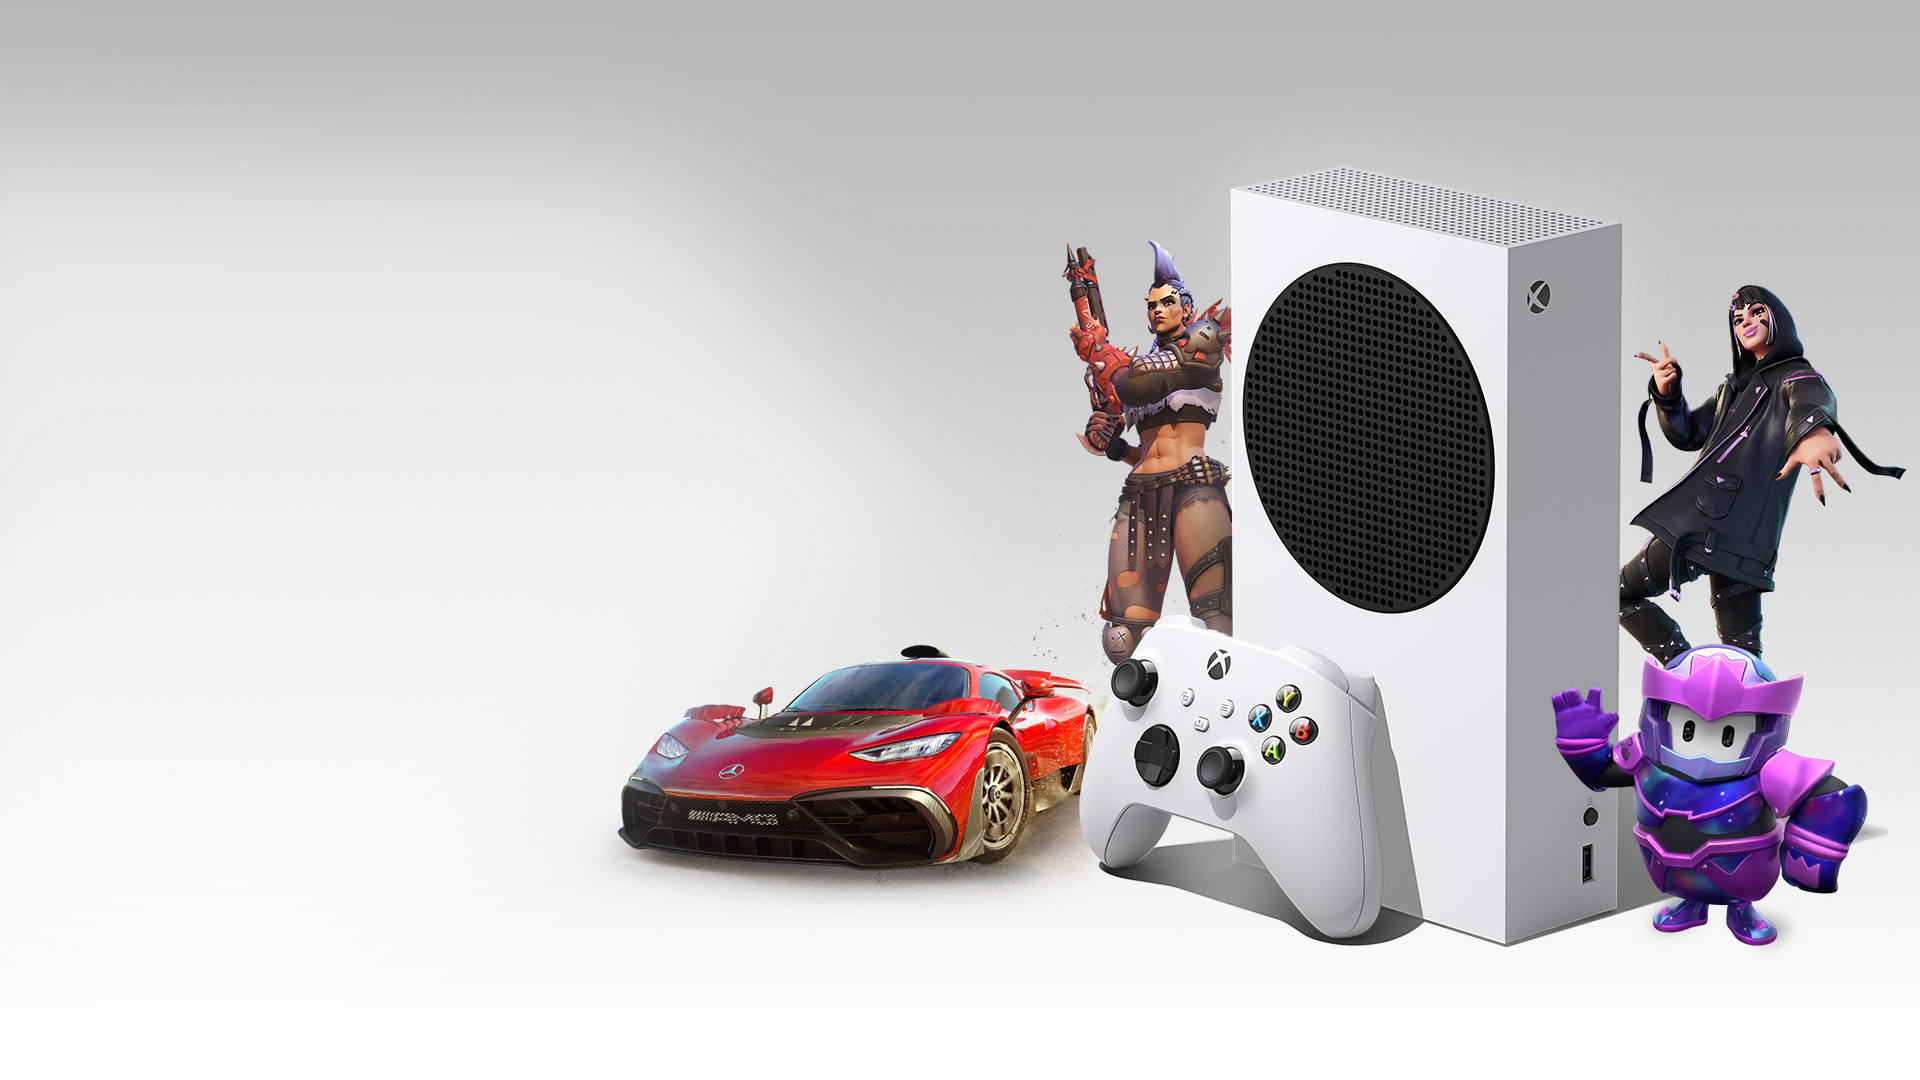 Консоль Xbox Series S в окружении персонажей из игр Overwatch 2, Fortnite, Fall Guys и гиперкар Mercedes-AMG One из игры Forza Horizon 5.